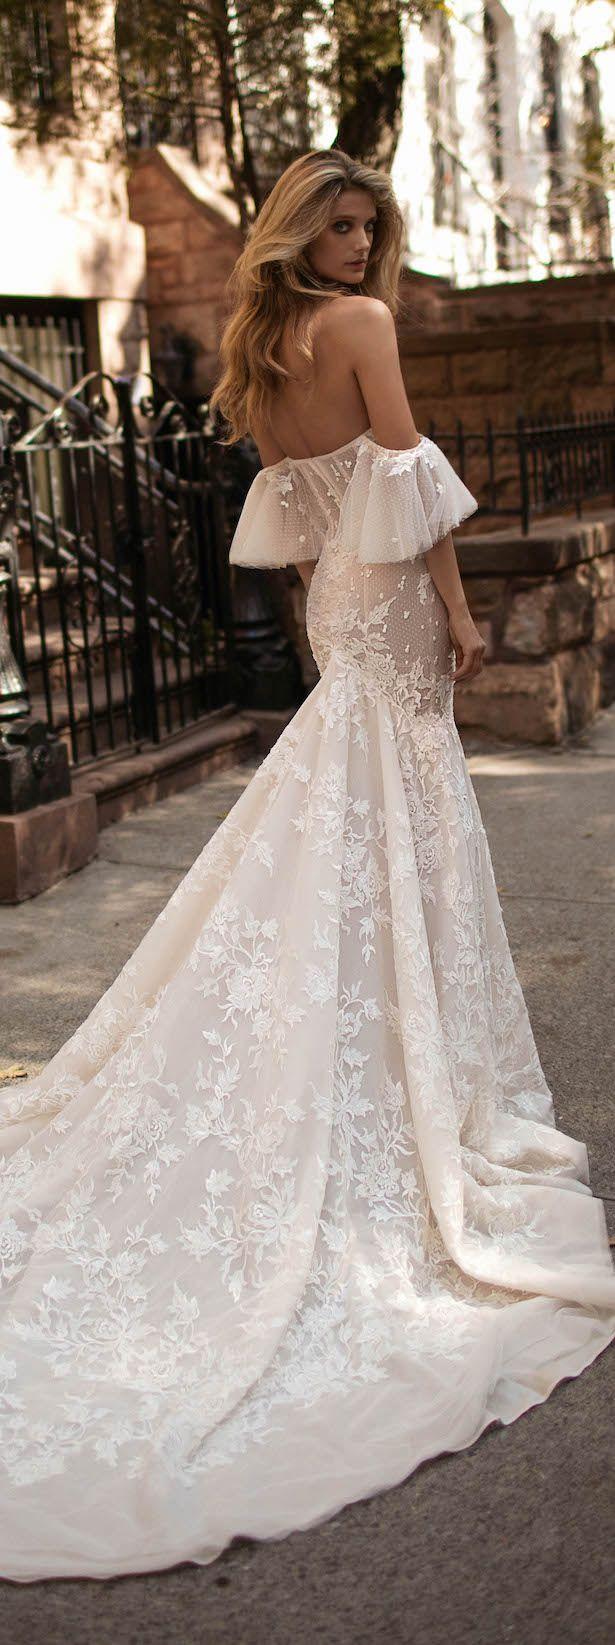 زفاف - Wedding Dress By Berta Bridal Fall 2017